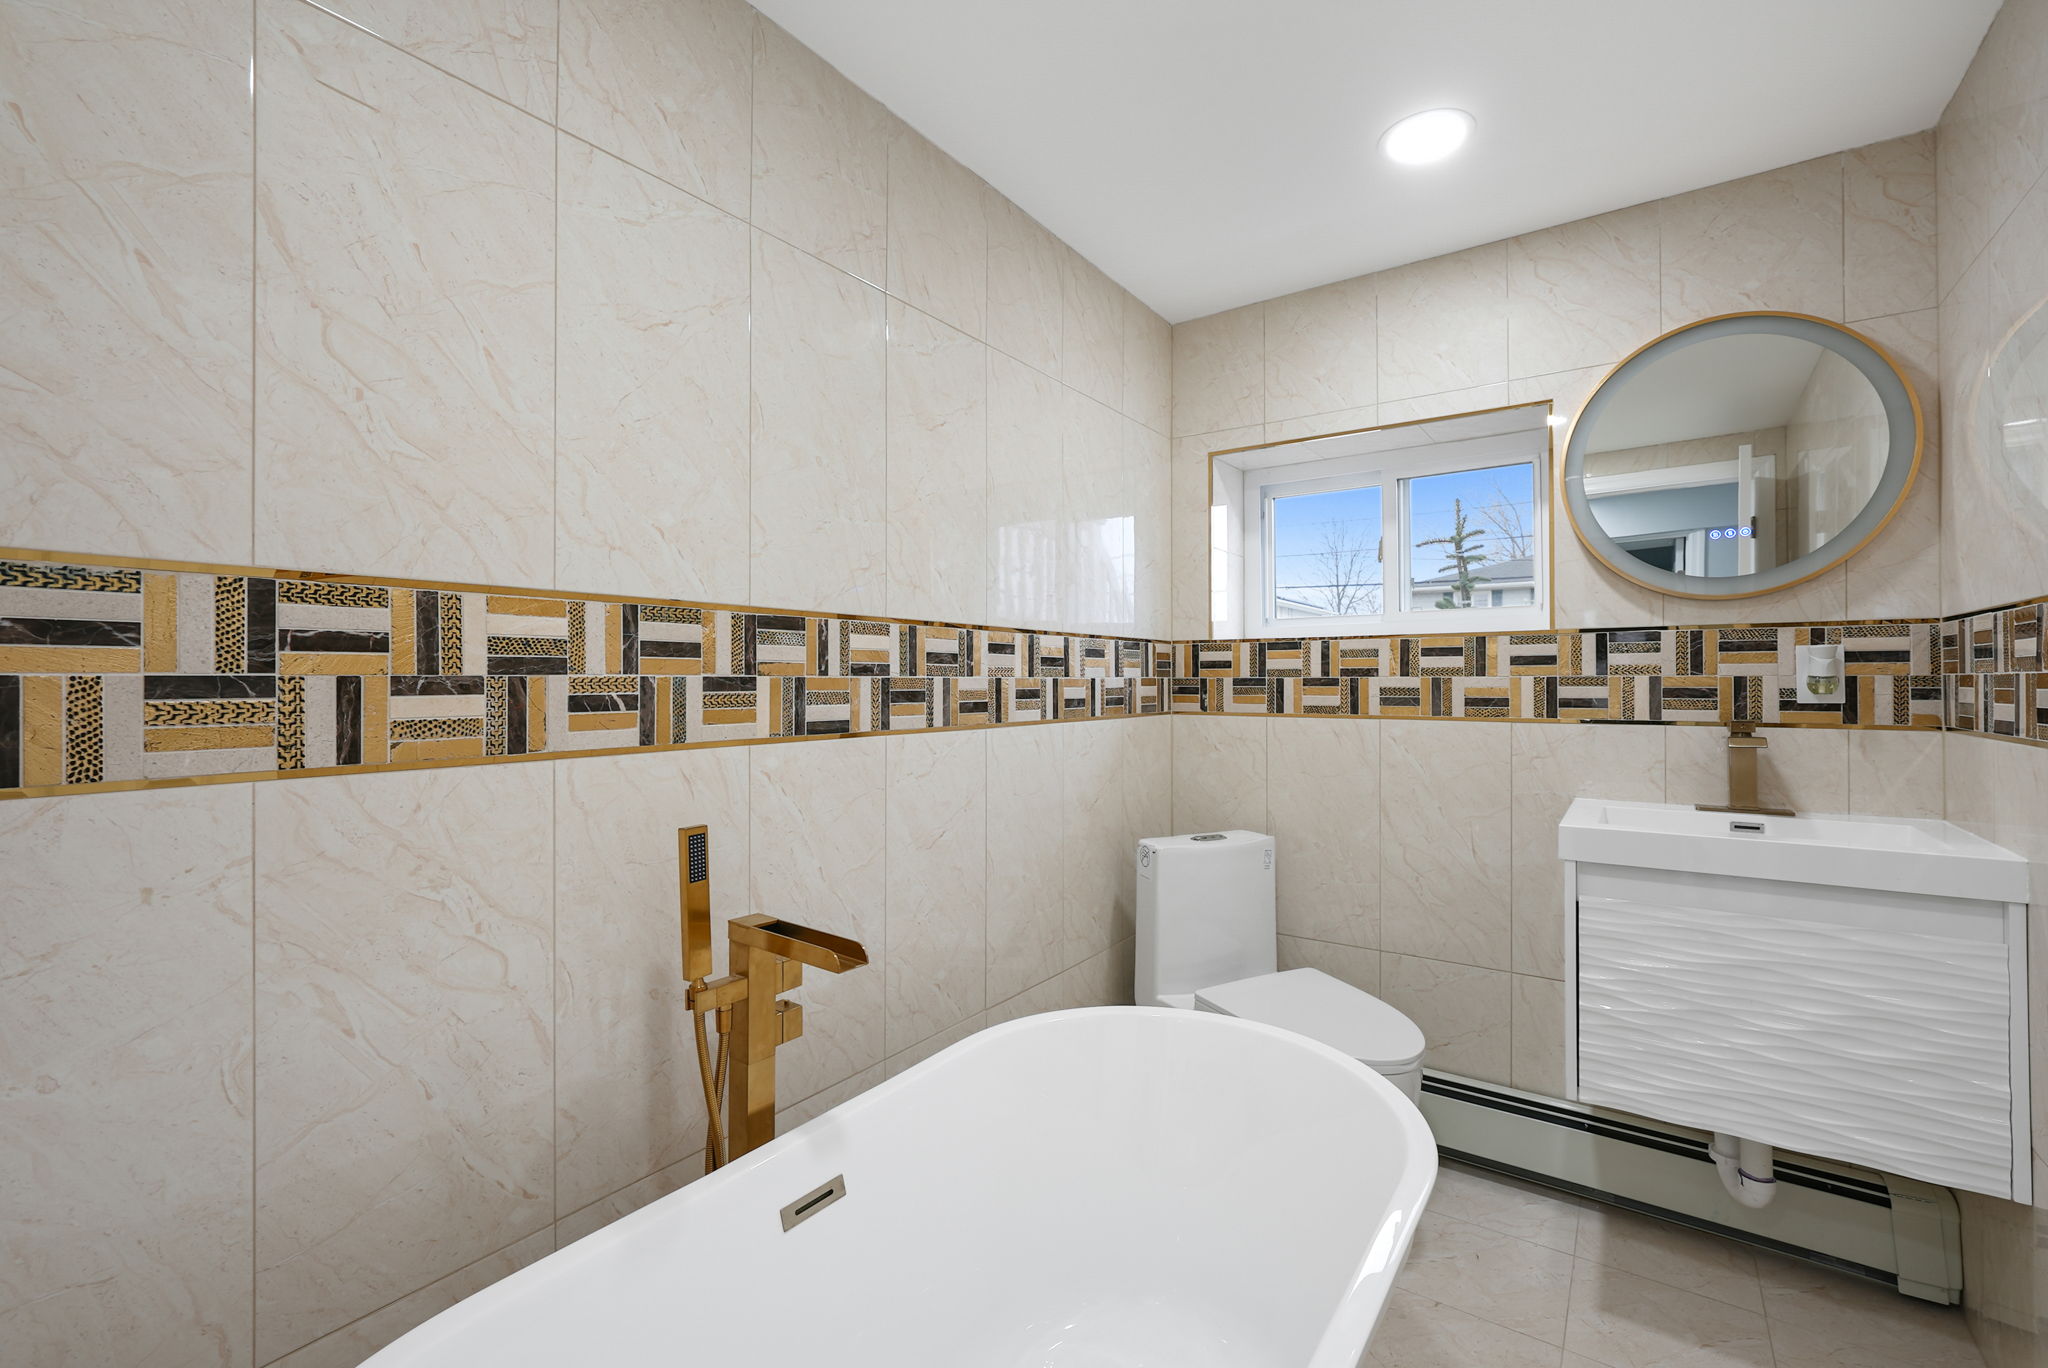 Fully Tiled Bathroom